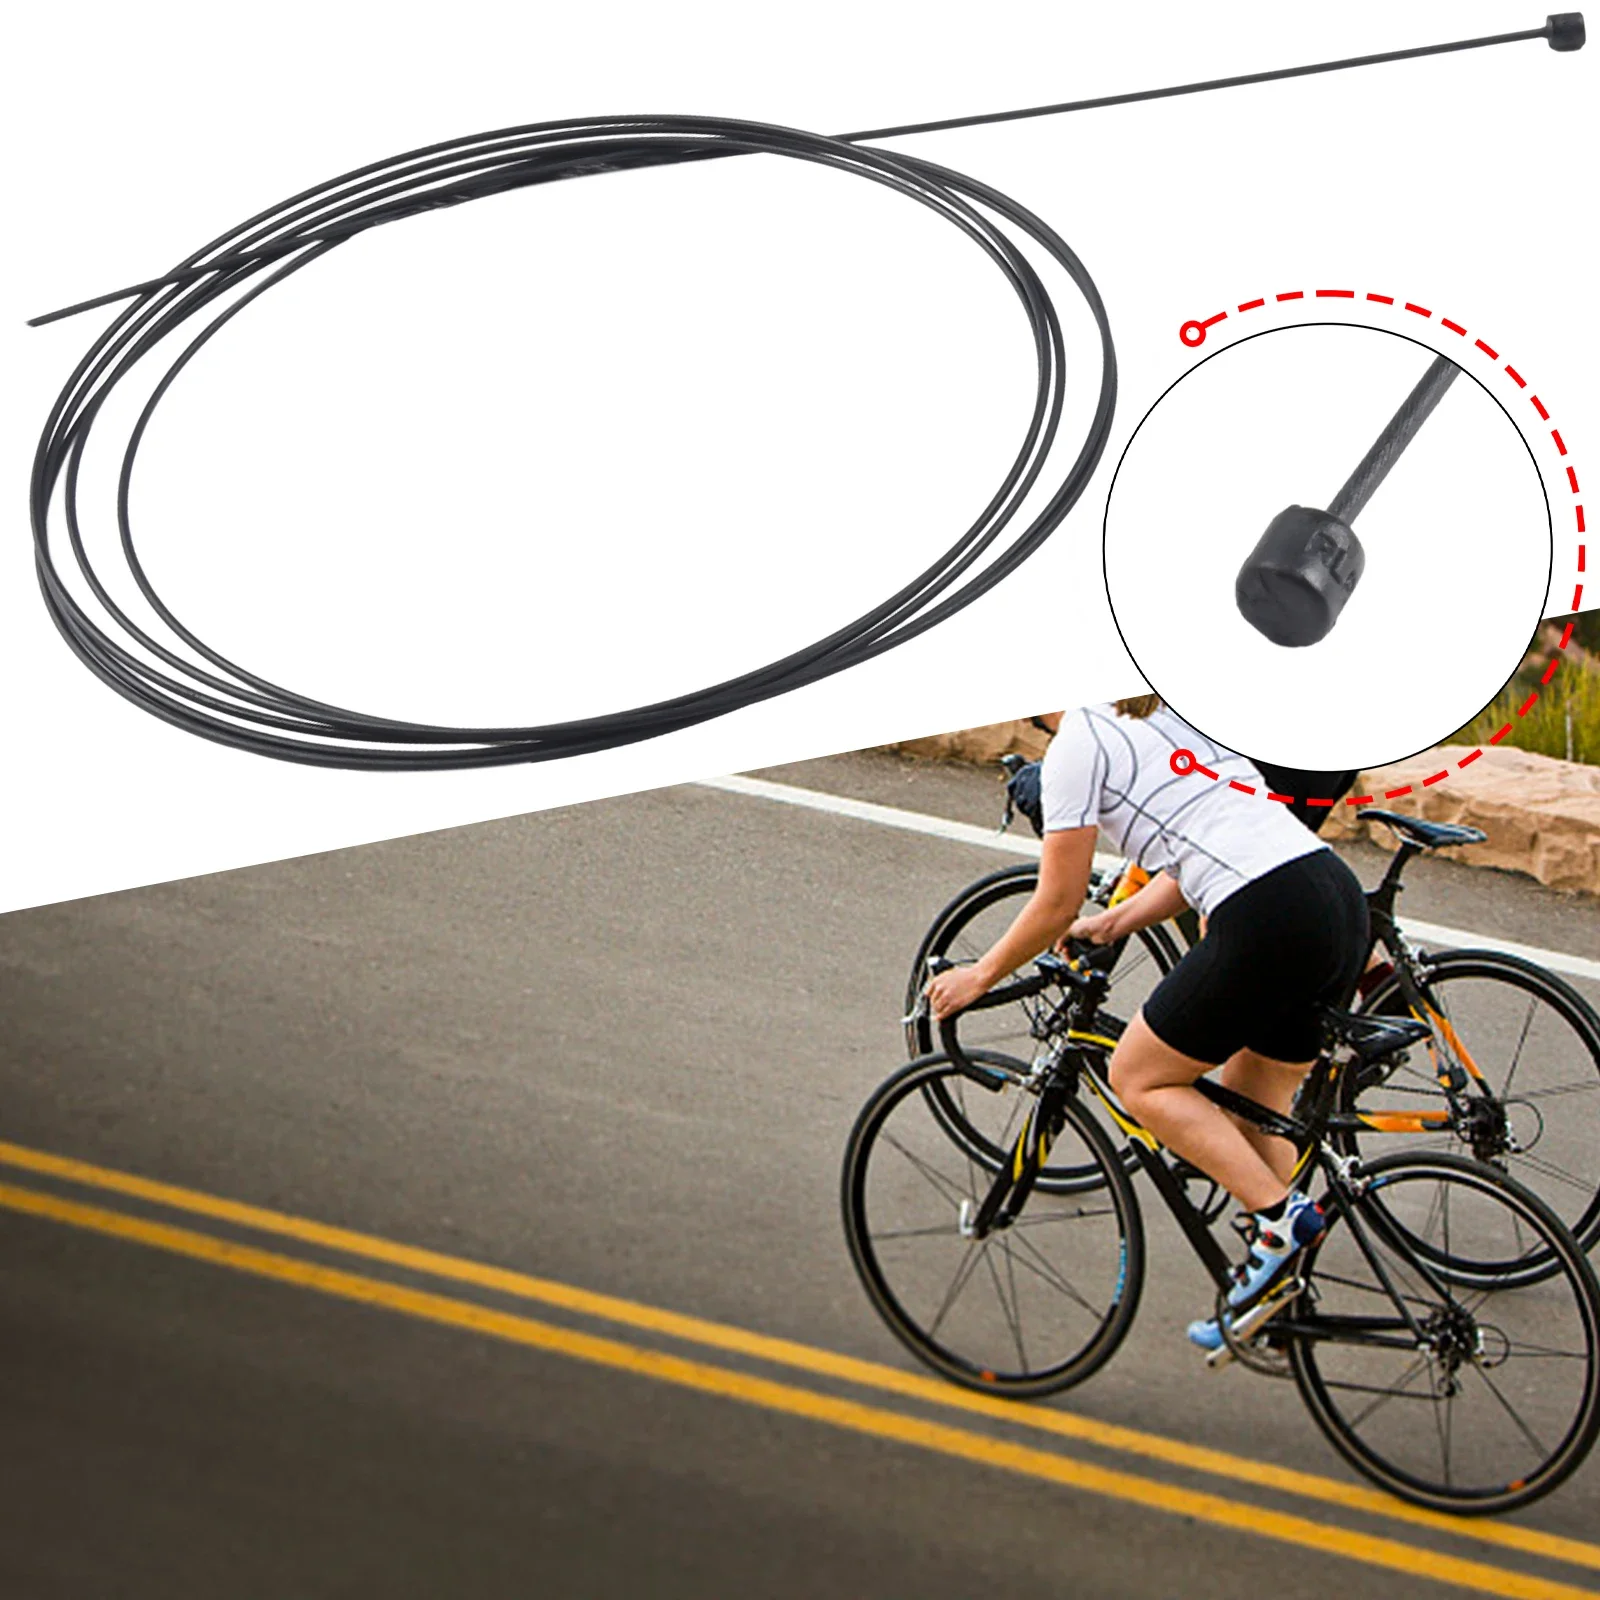 

Универсальный кабель, комплект для ремонта горного велосипеда, сменный тормоз, Высококачественная проволочная трубка с внутренним сердечником